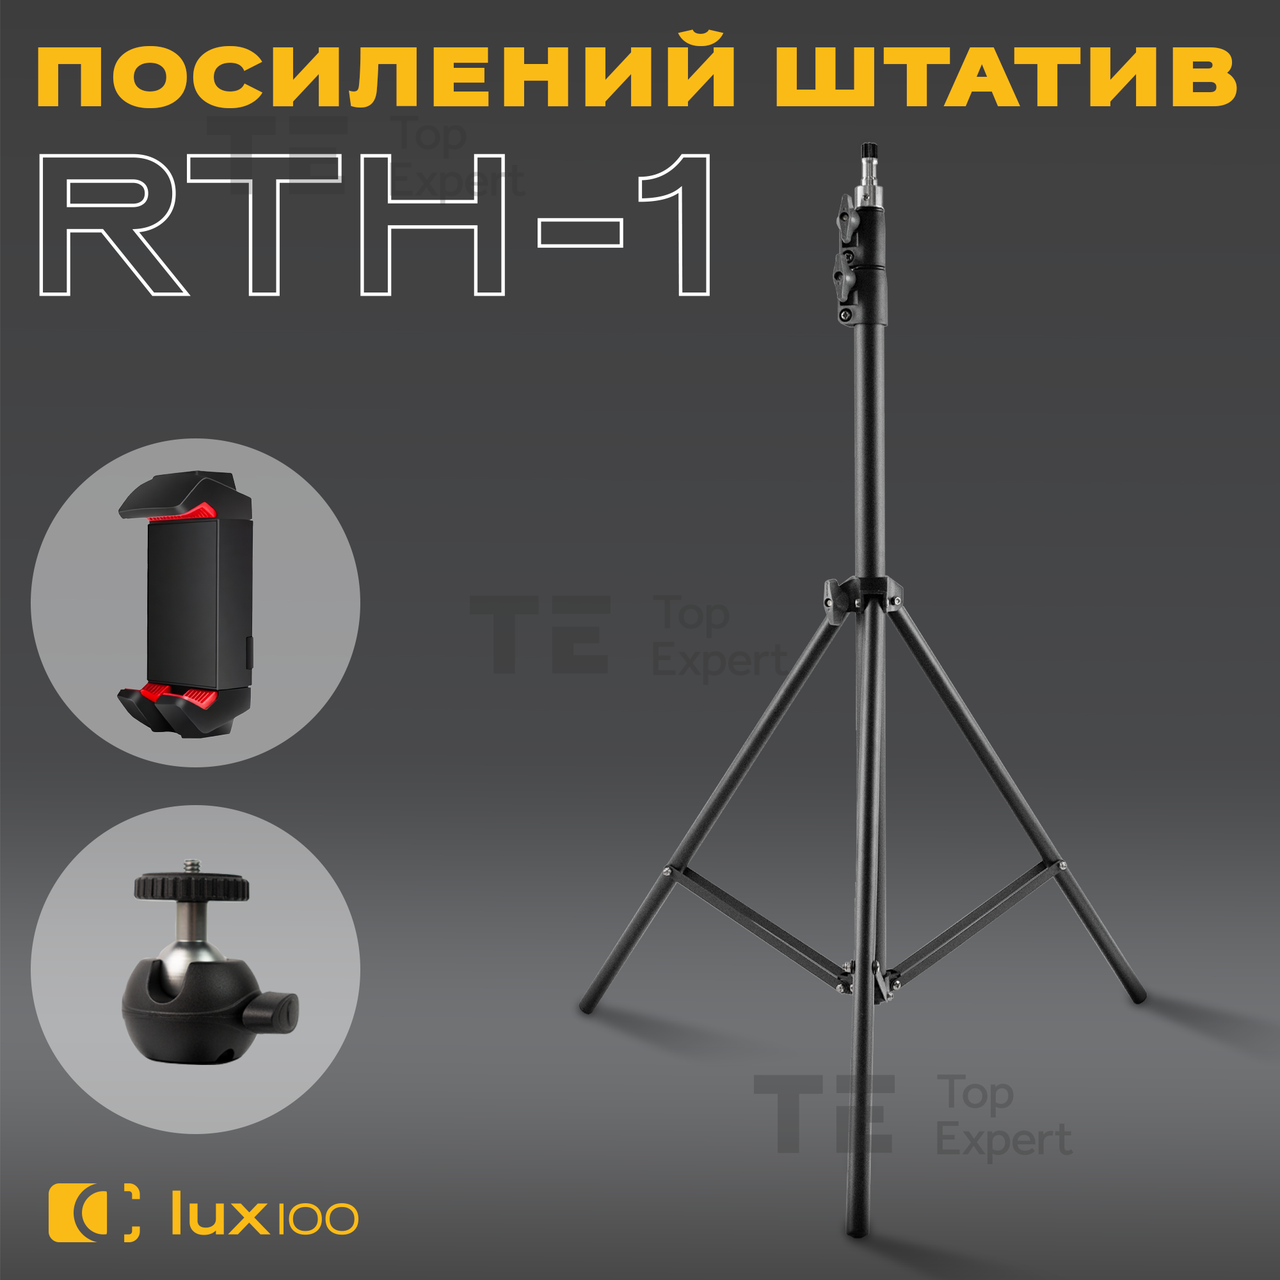 Посилений штатив LUX100 RTH-1 2 м із затискачем тримачем на 360 для телефона планшета кільцевої лампи відеосвітла